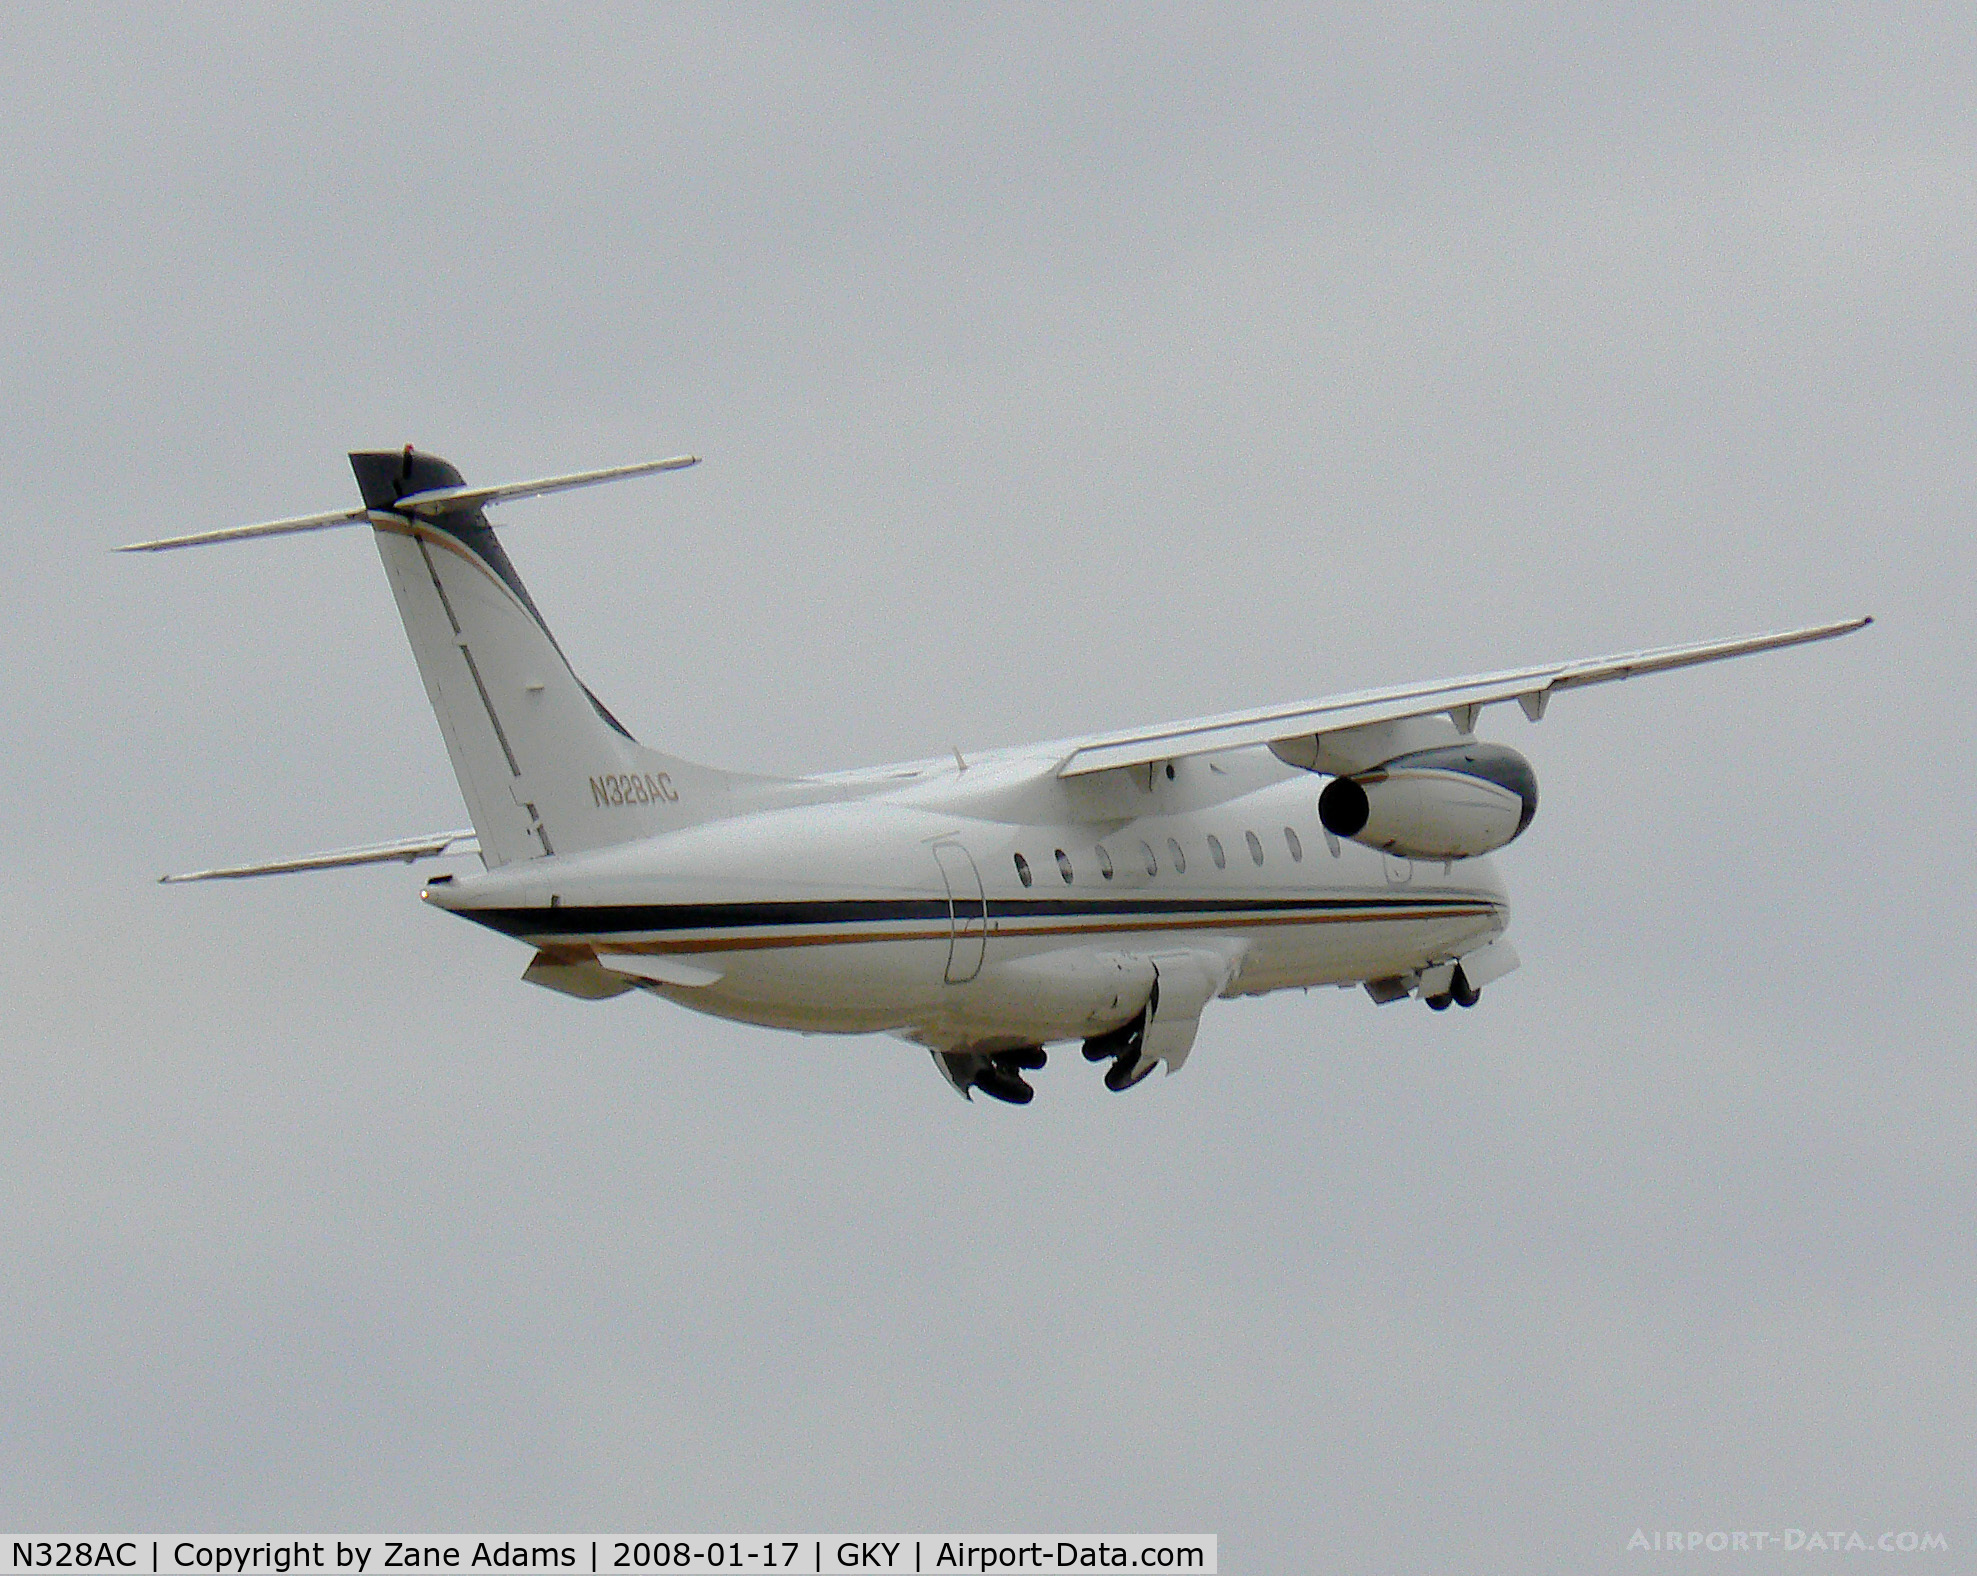 N328AC, 2000 Fairchild Dornier 328-300 328JET C/N 3132, Dornier 328  -  Takeoff!